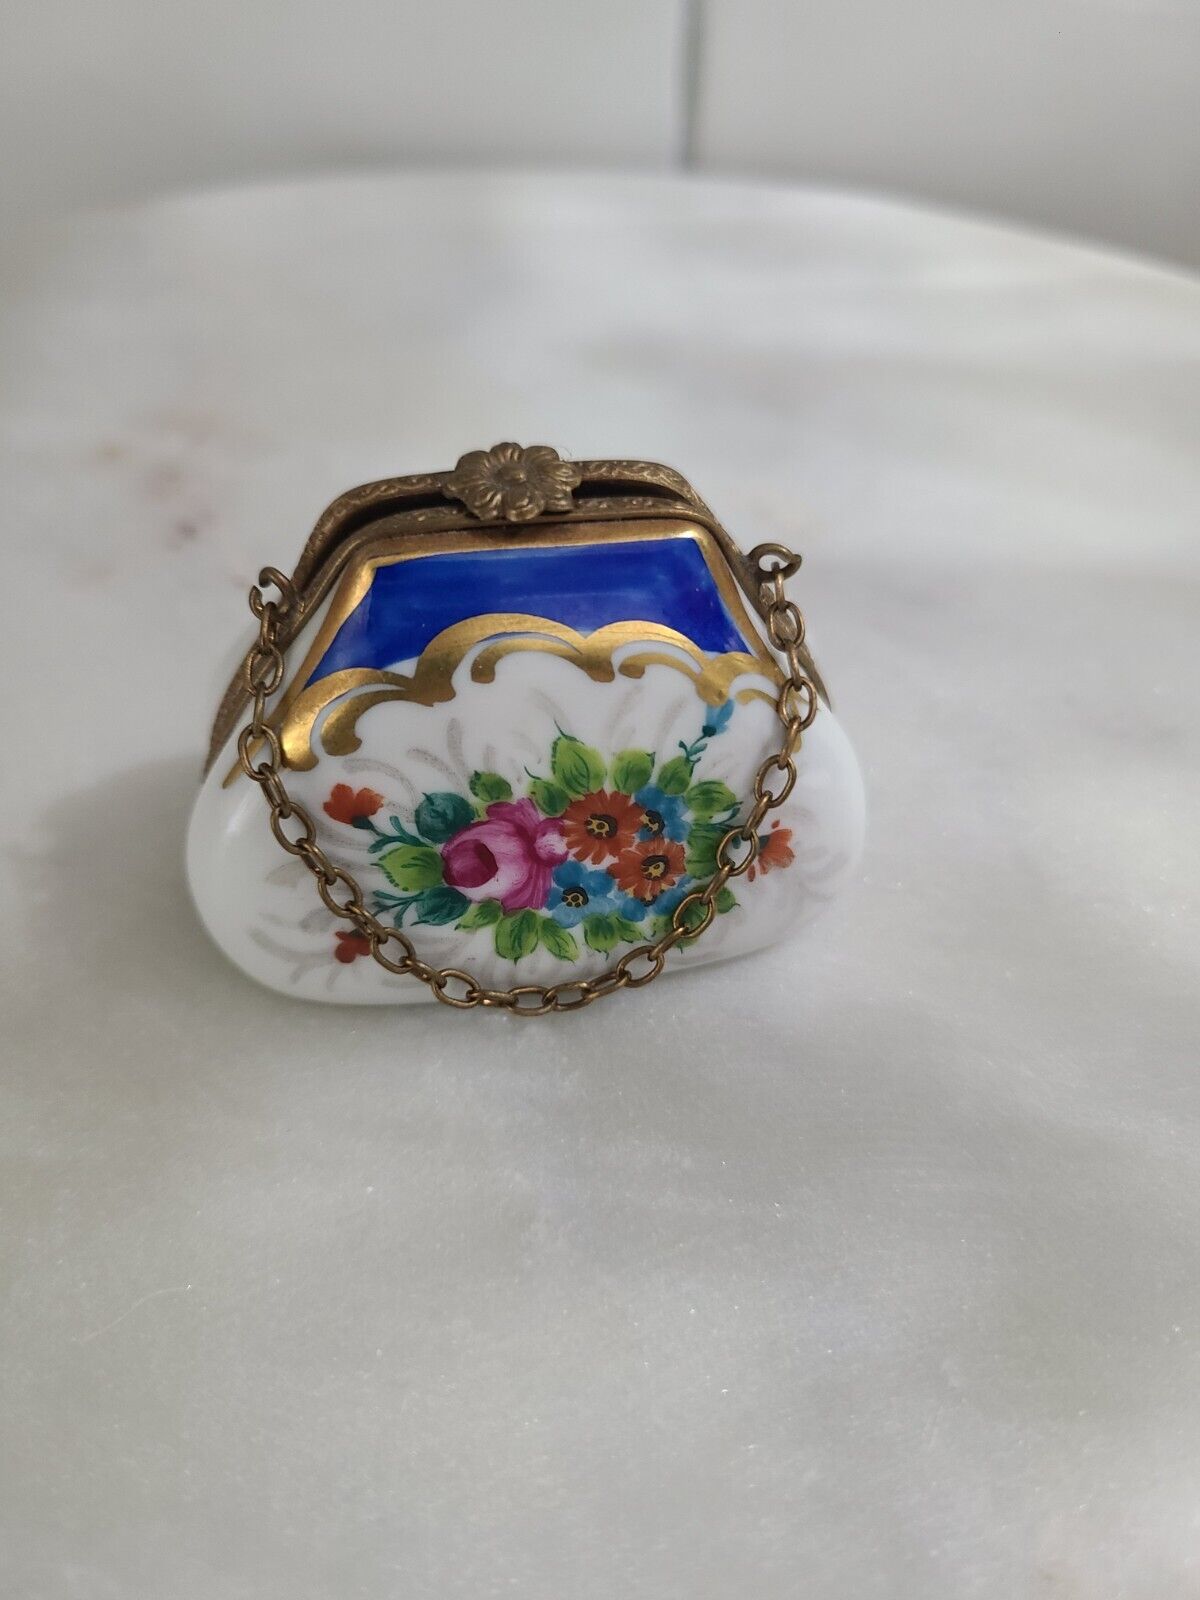 Vintage Limoges Peint Mein France Porcelain Purse Trinket Box Chain Floral